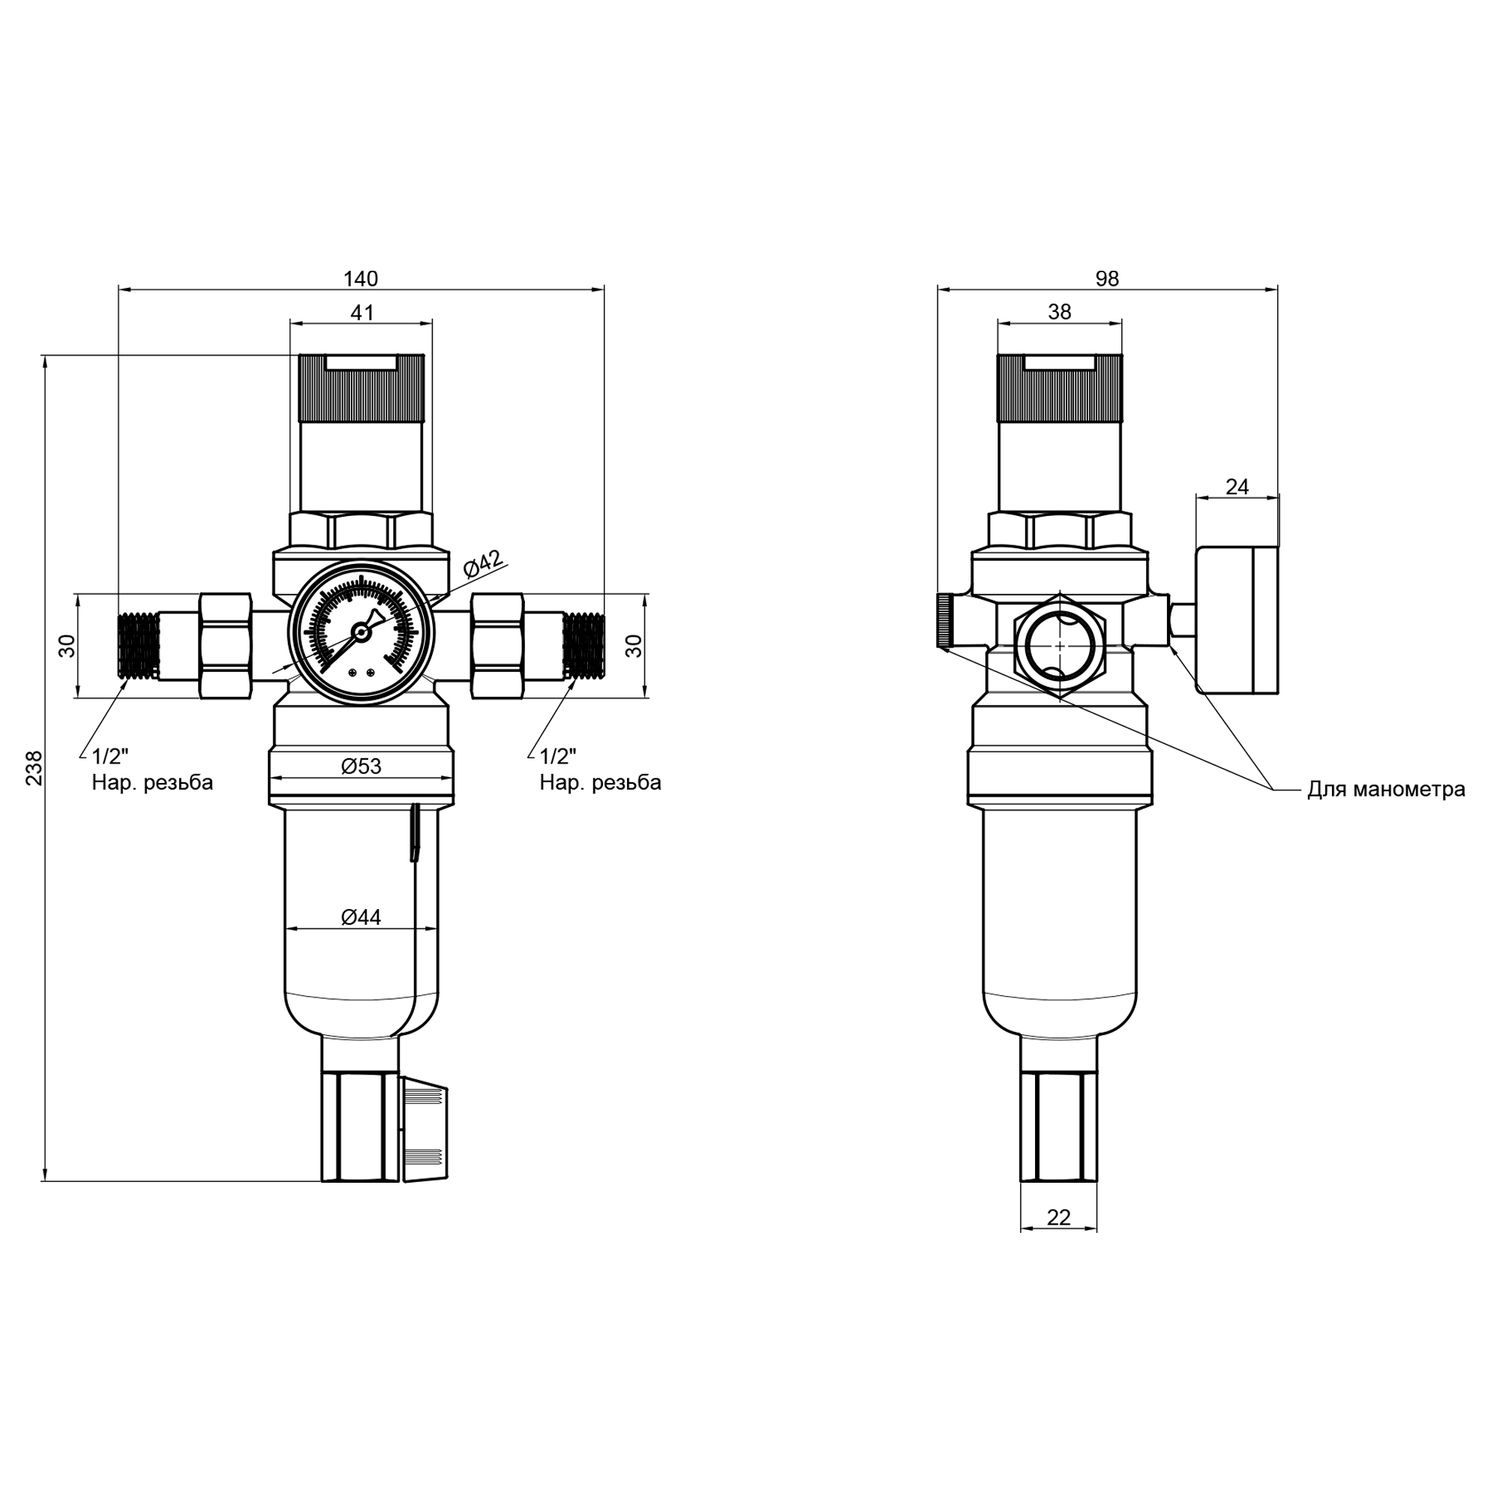 Фильтр самопромывной SD Forte 1/2" с редуктором для горячей воды